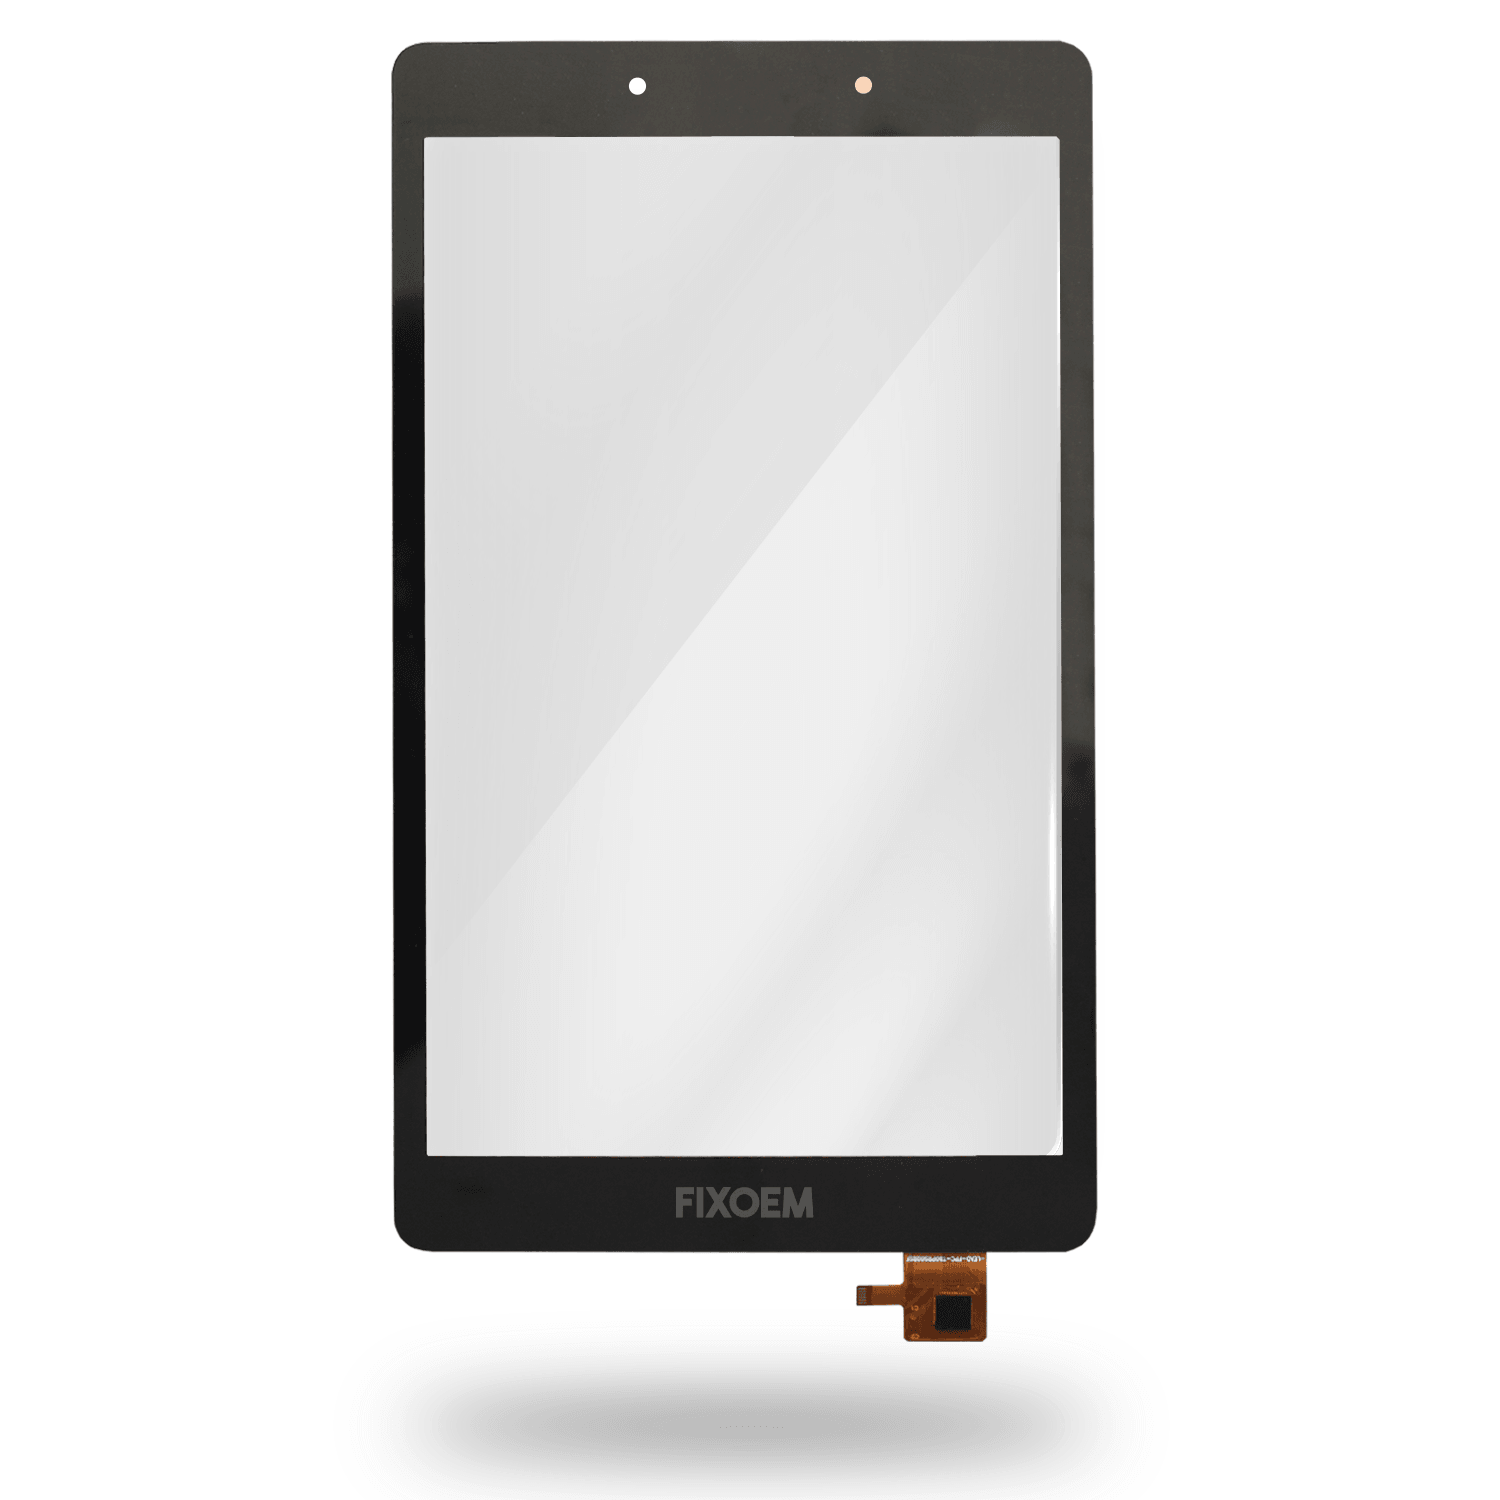 Touch Para Samsung Galaxy Tab A 2019 Sm-T290 a solo $ 110.00 Refaccion y puestos celulares, refurbish y microelectronica.- FixOEM